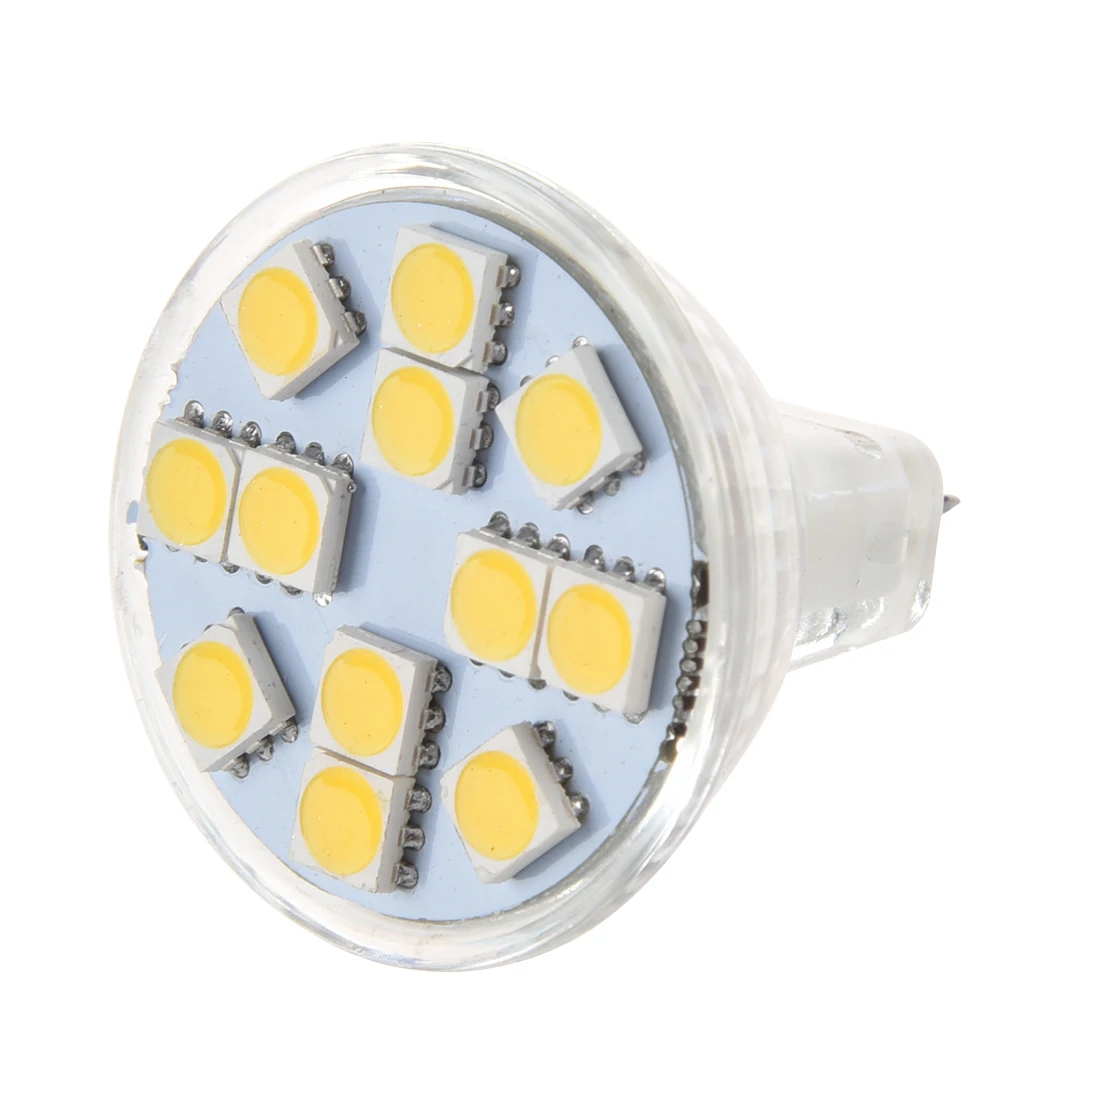 

MR11 G4 12 LED Spot Light Bulb Warm White New